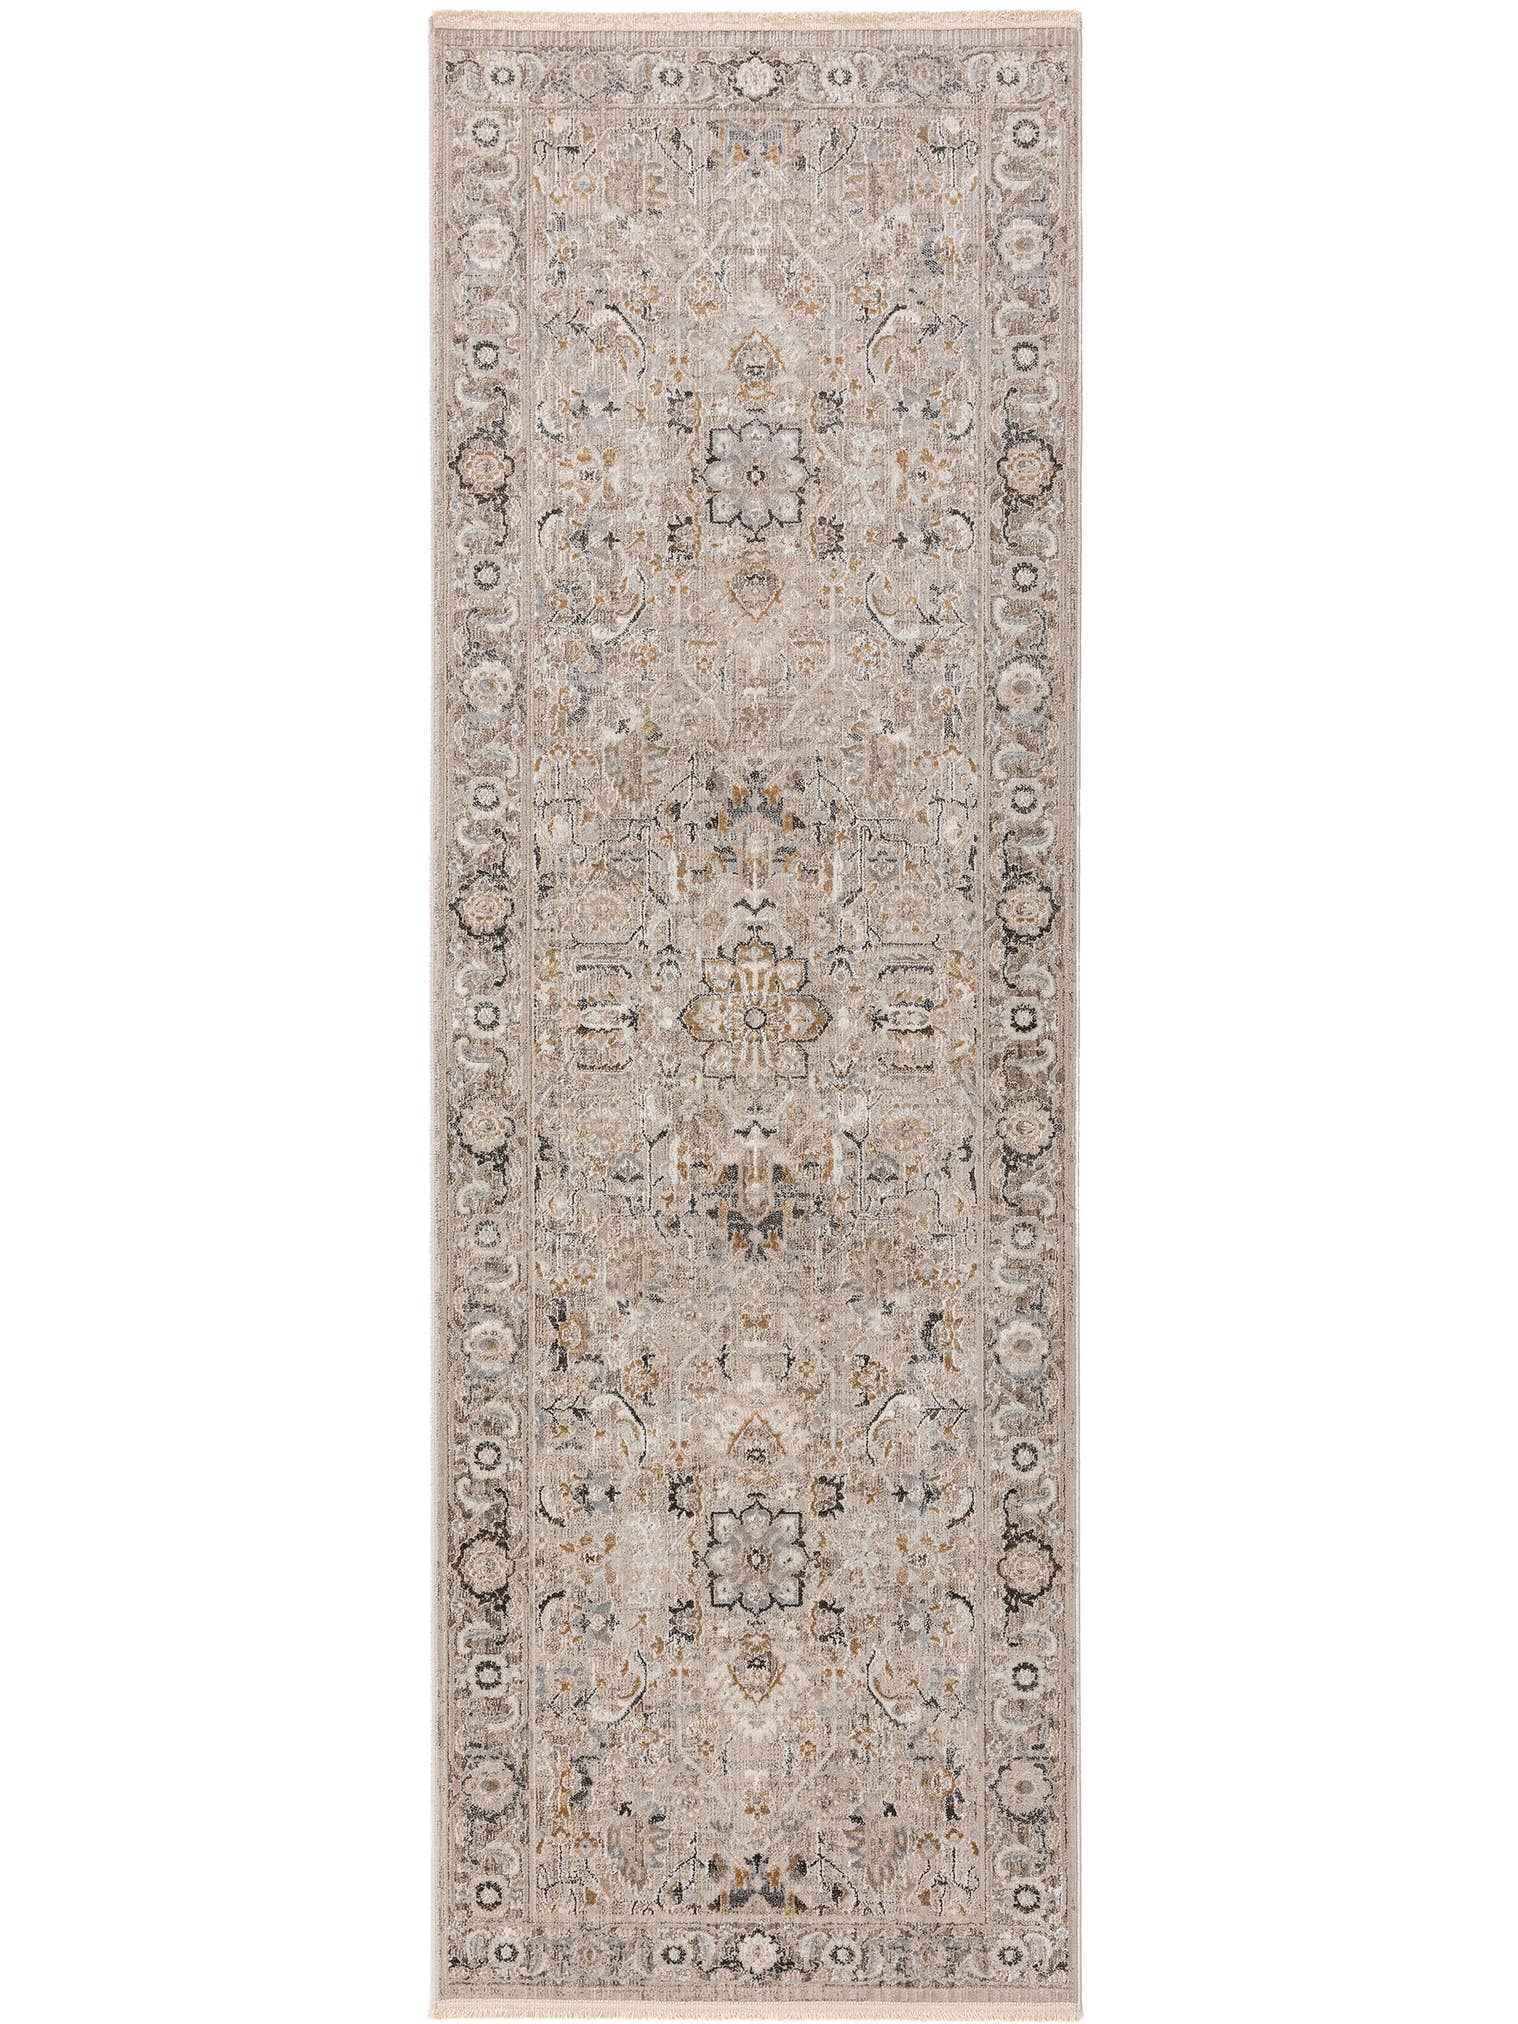 Teppich aus 65% Viskose, 35% Polyester in Grau mit 6 bis 10 mm hohem Flor von benuta Nest